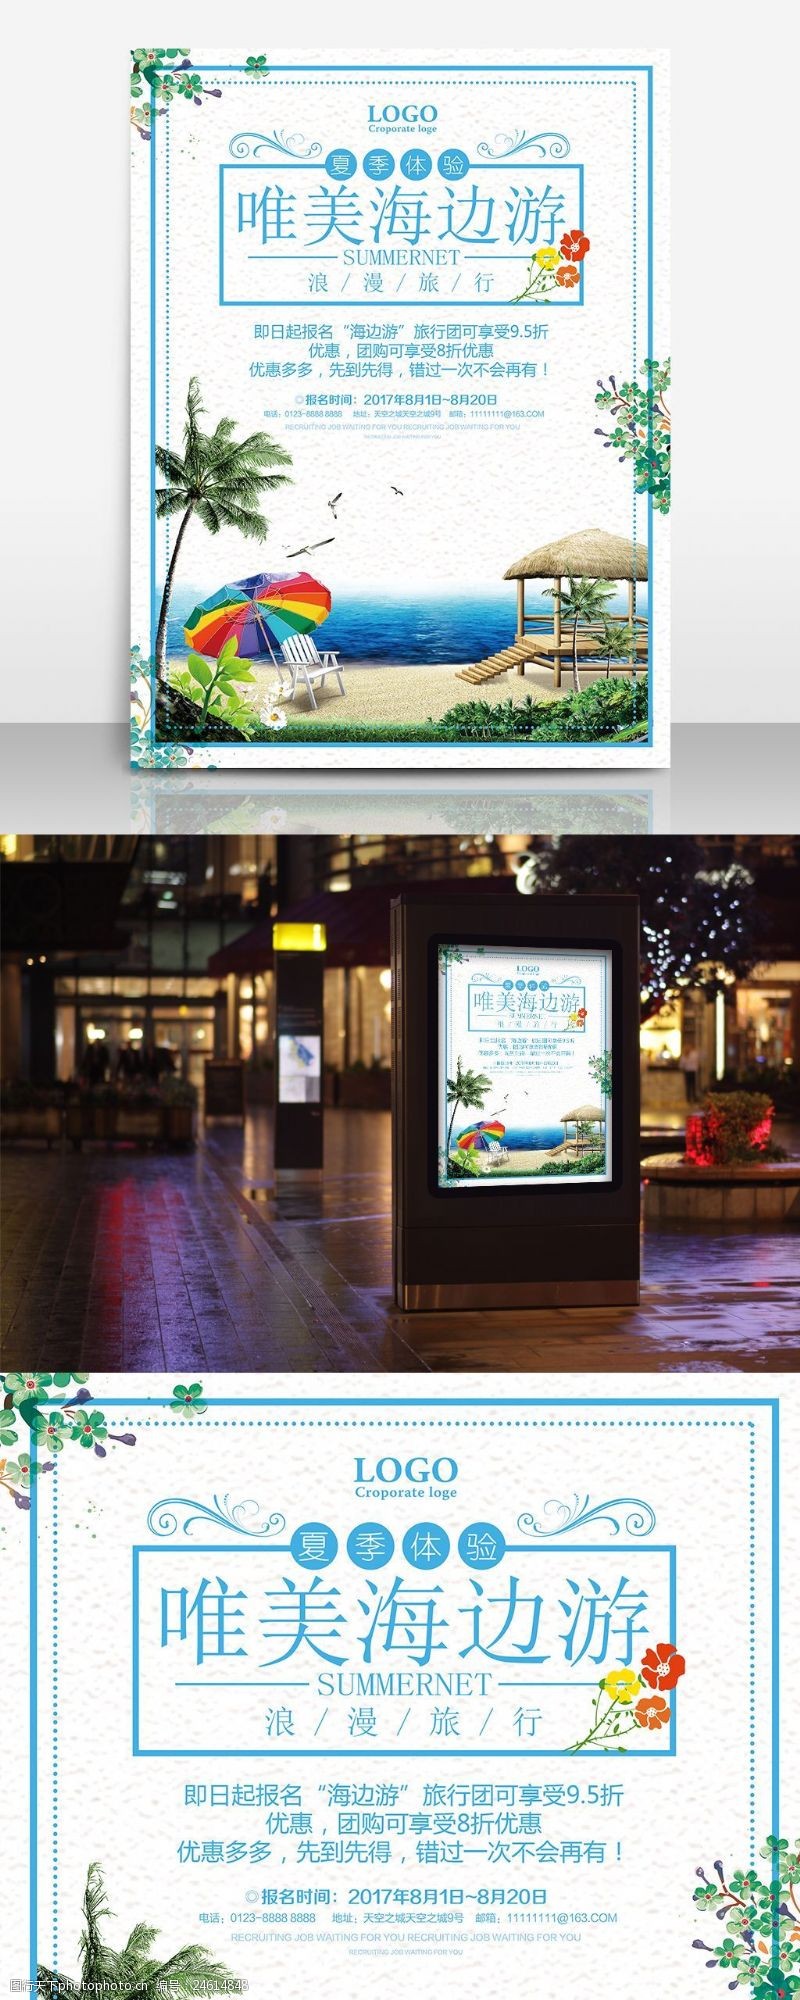 夏威夷海边游旅行社宣传海报设计